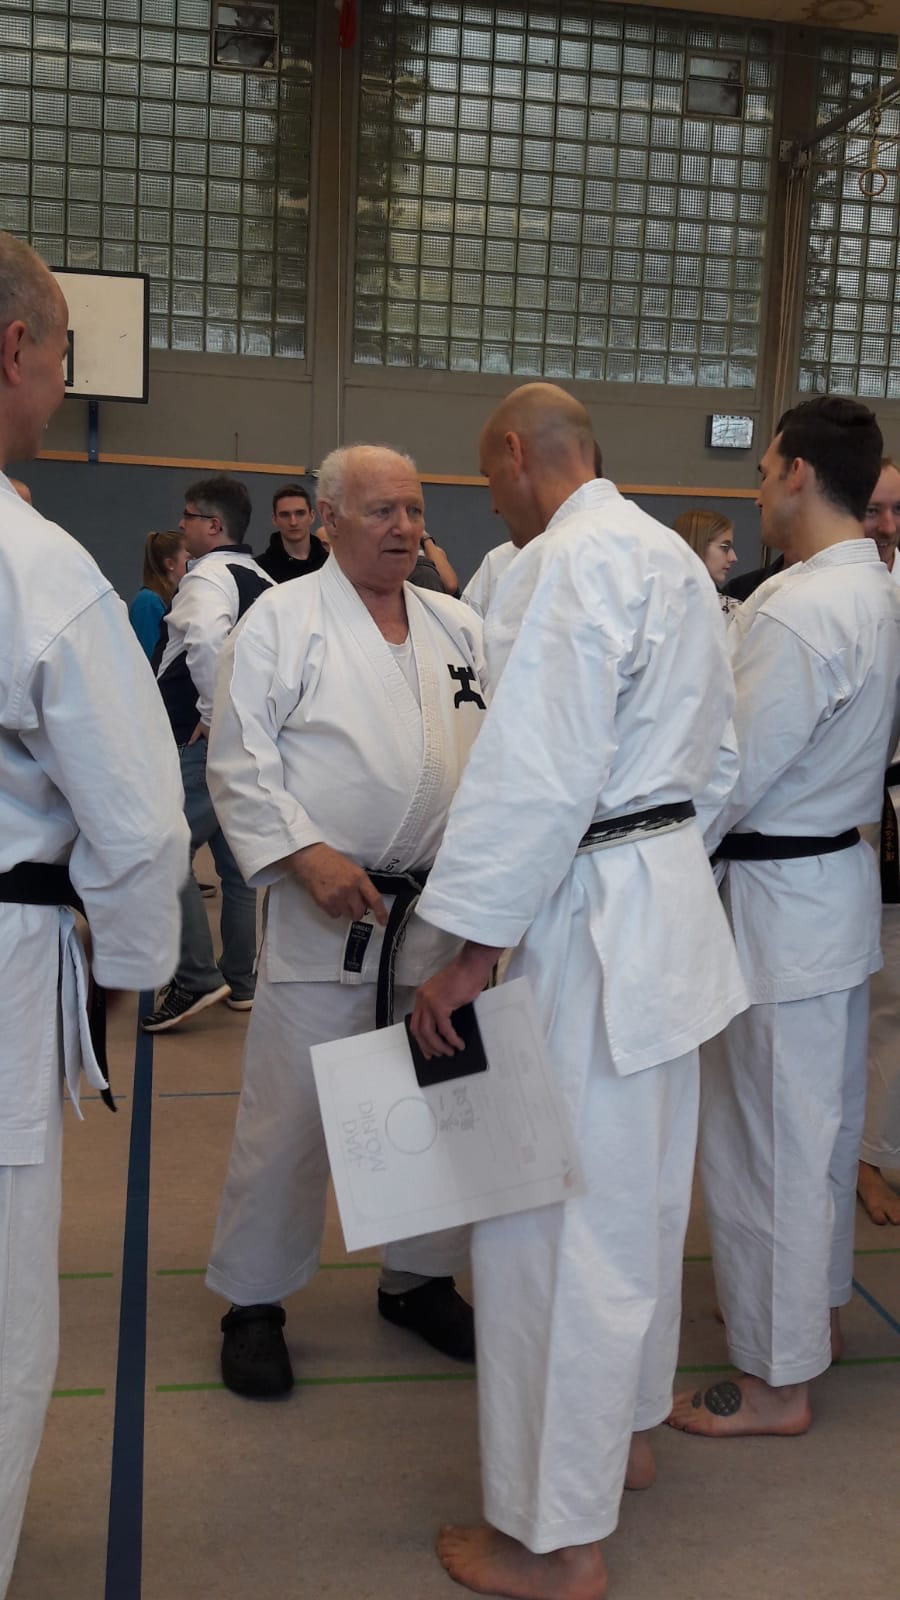 Karate Dan Prüfung von René Roese Glückwunsch zum 4.Dan und vielen Dank an den Partner Thomas Skwarr